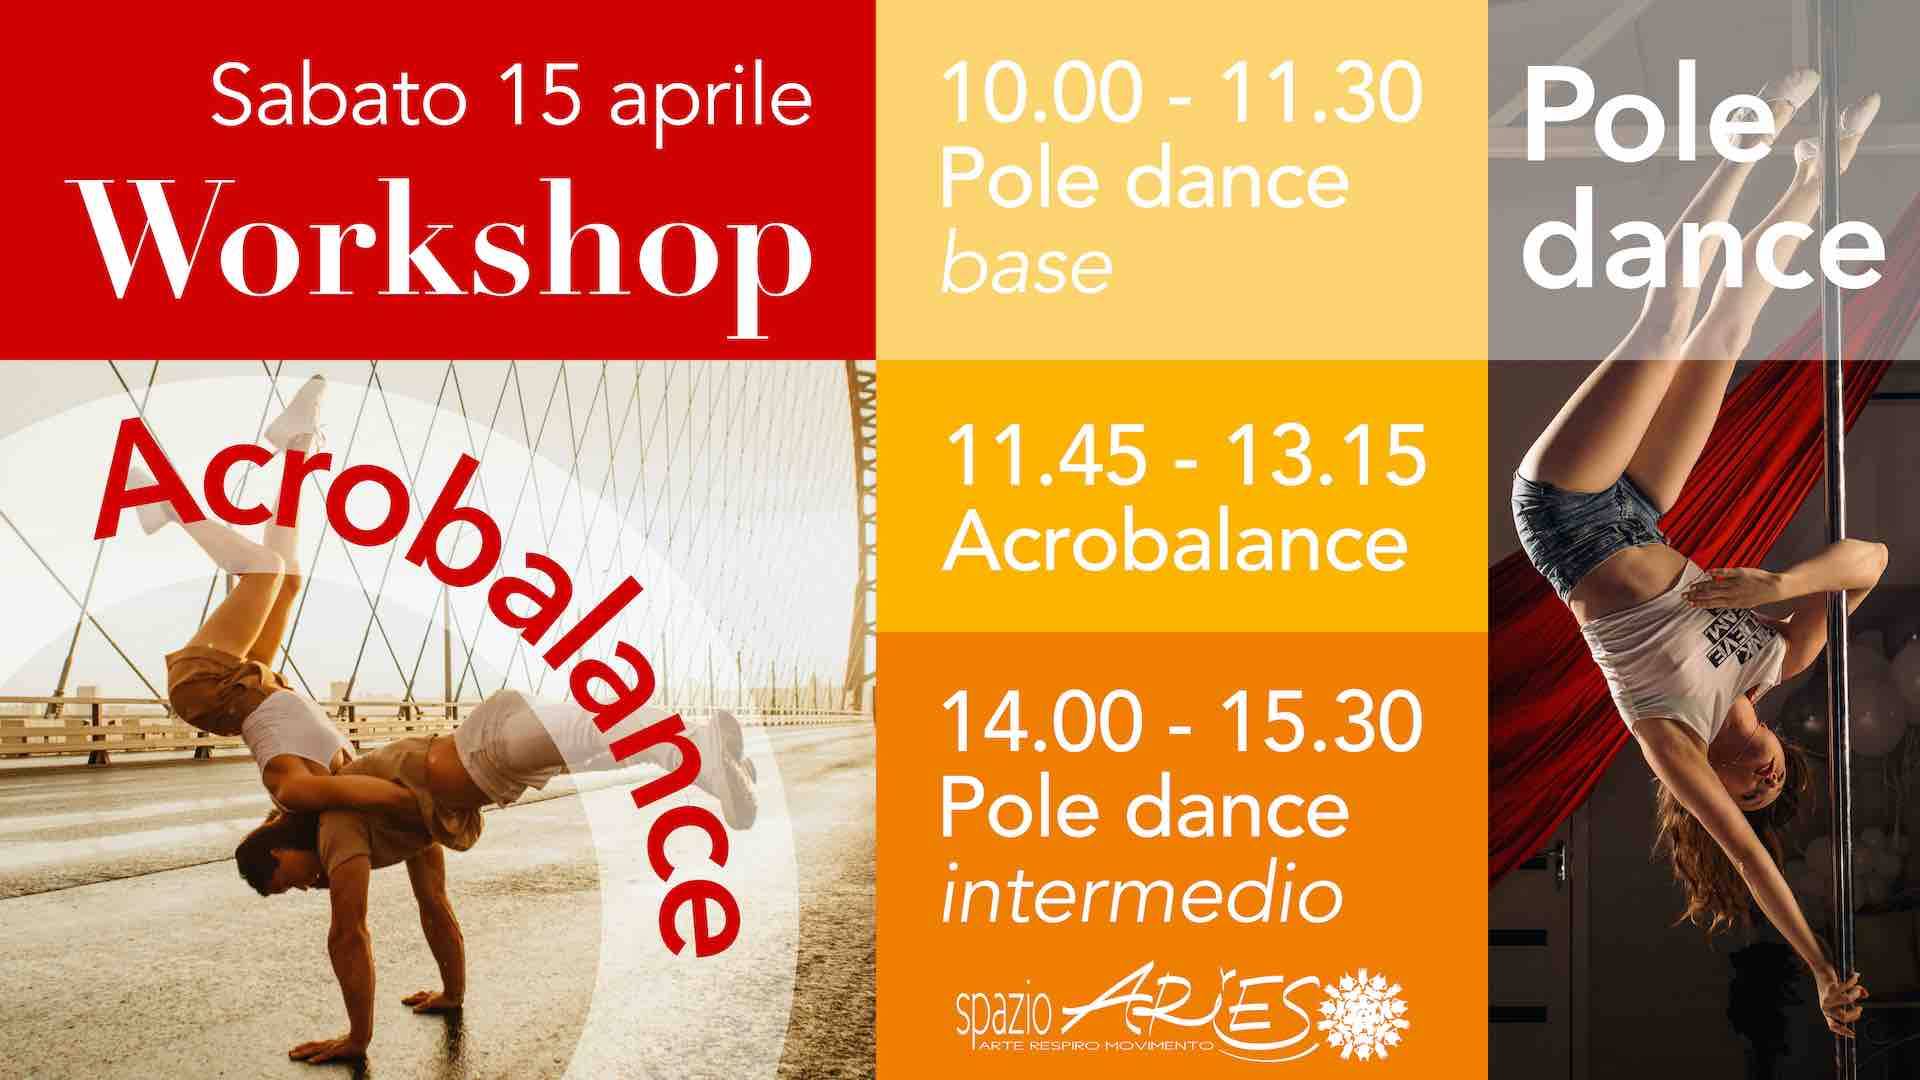 Sabato 15 aprile lezioni speciali di Pole dance e Acrobalance con Franco Maffè